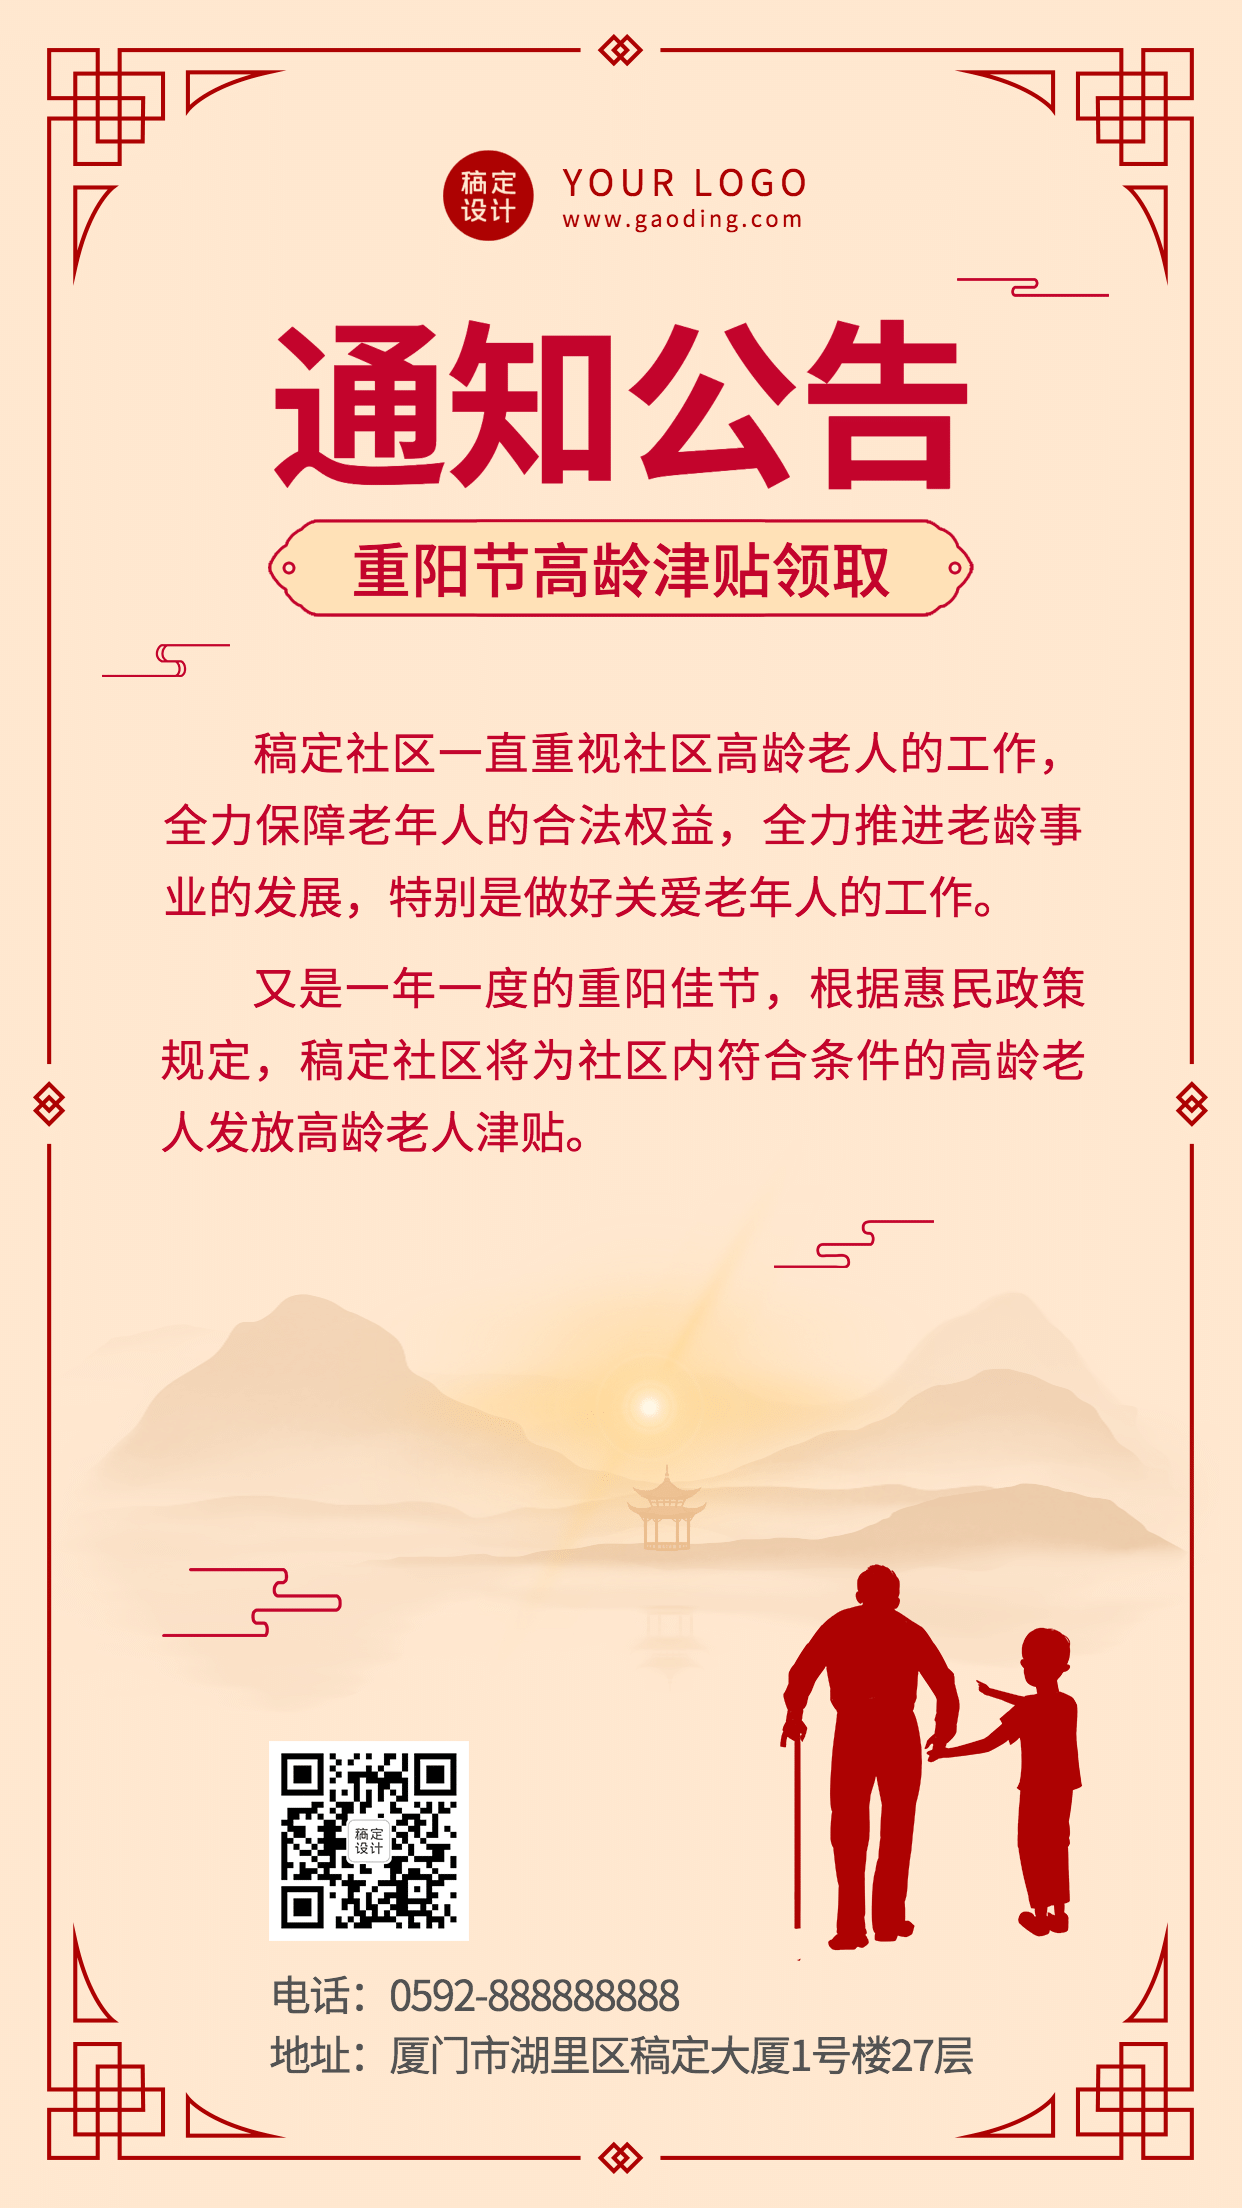 重阳节敬老福利通知公告中国风手机海报